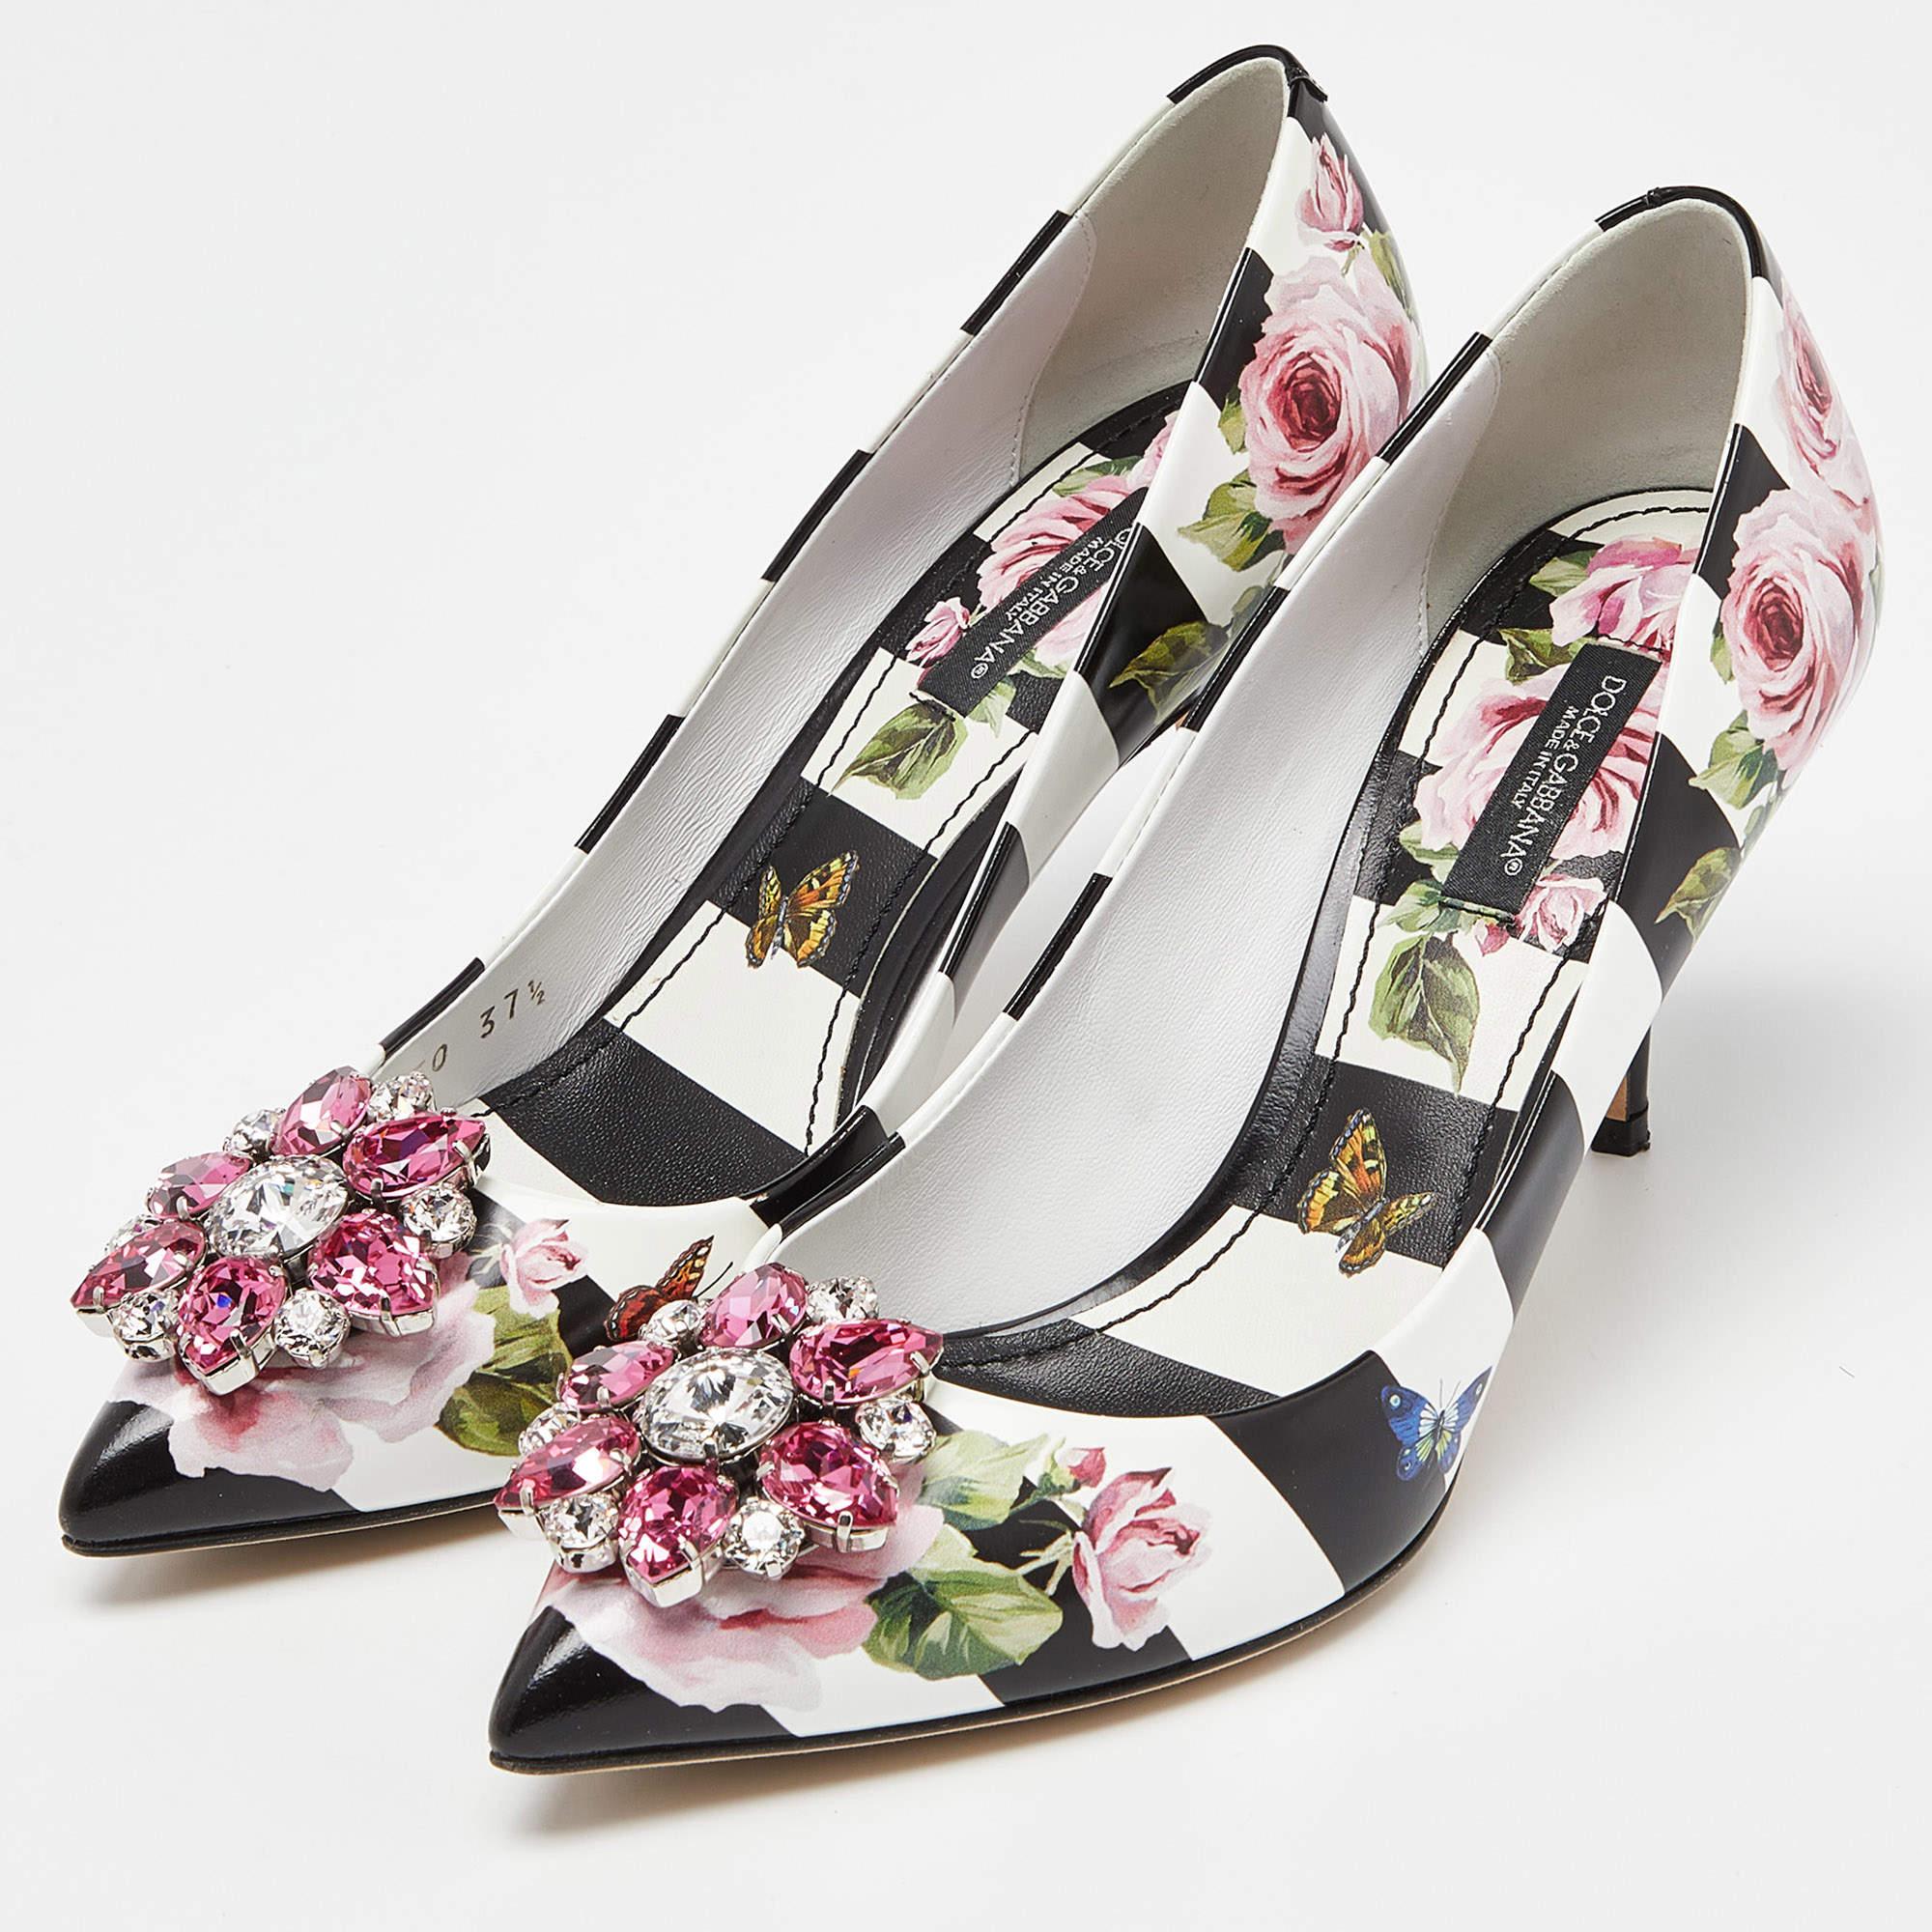 Dolce & Gabbana Multicolor Floral Print Crystal Embellished Pumps Size 37.5 1